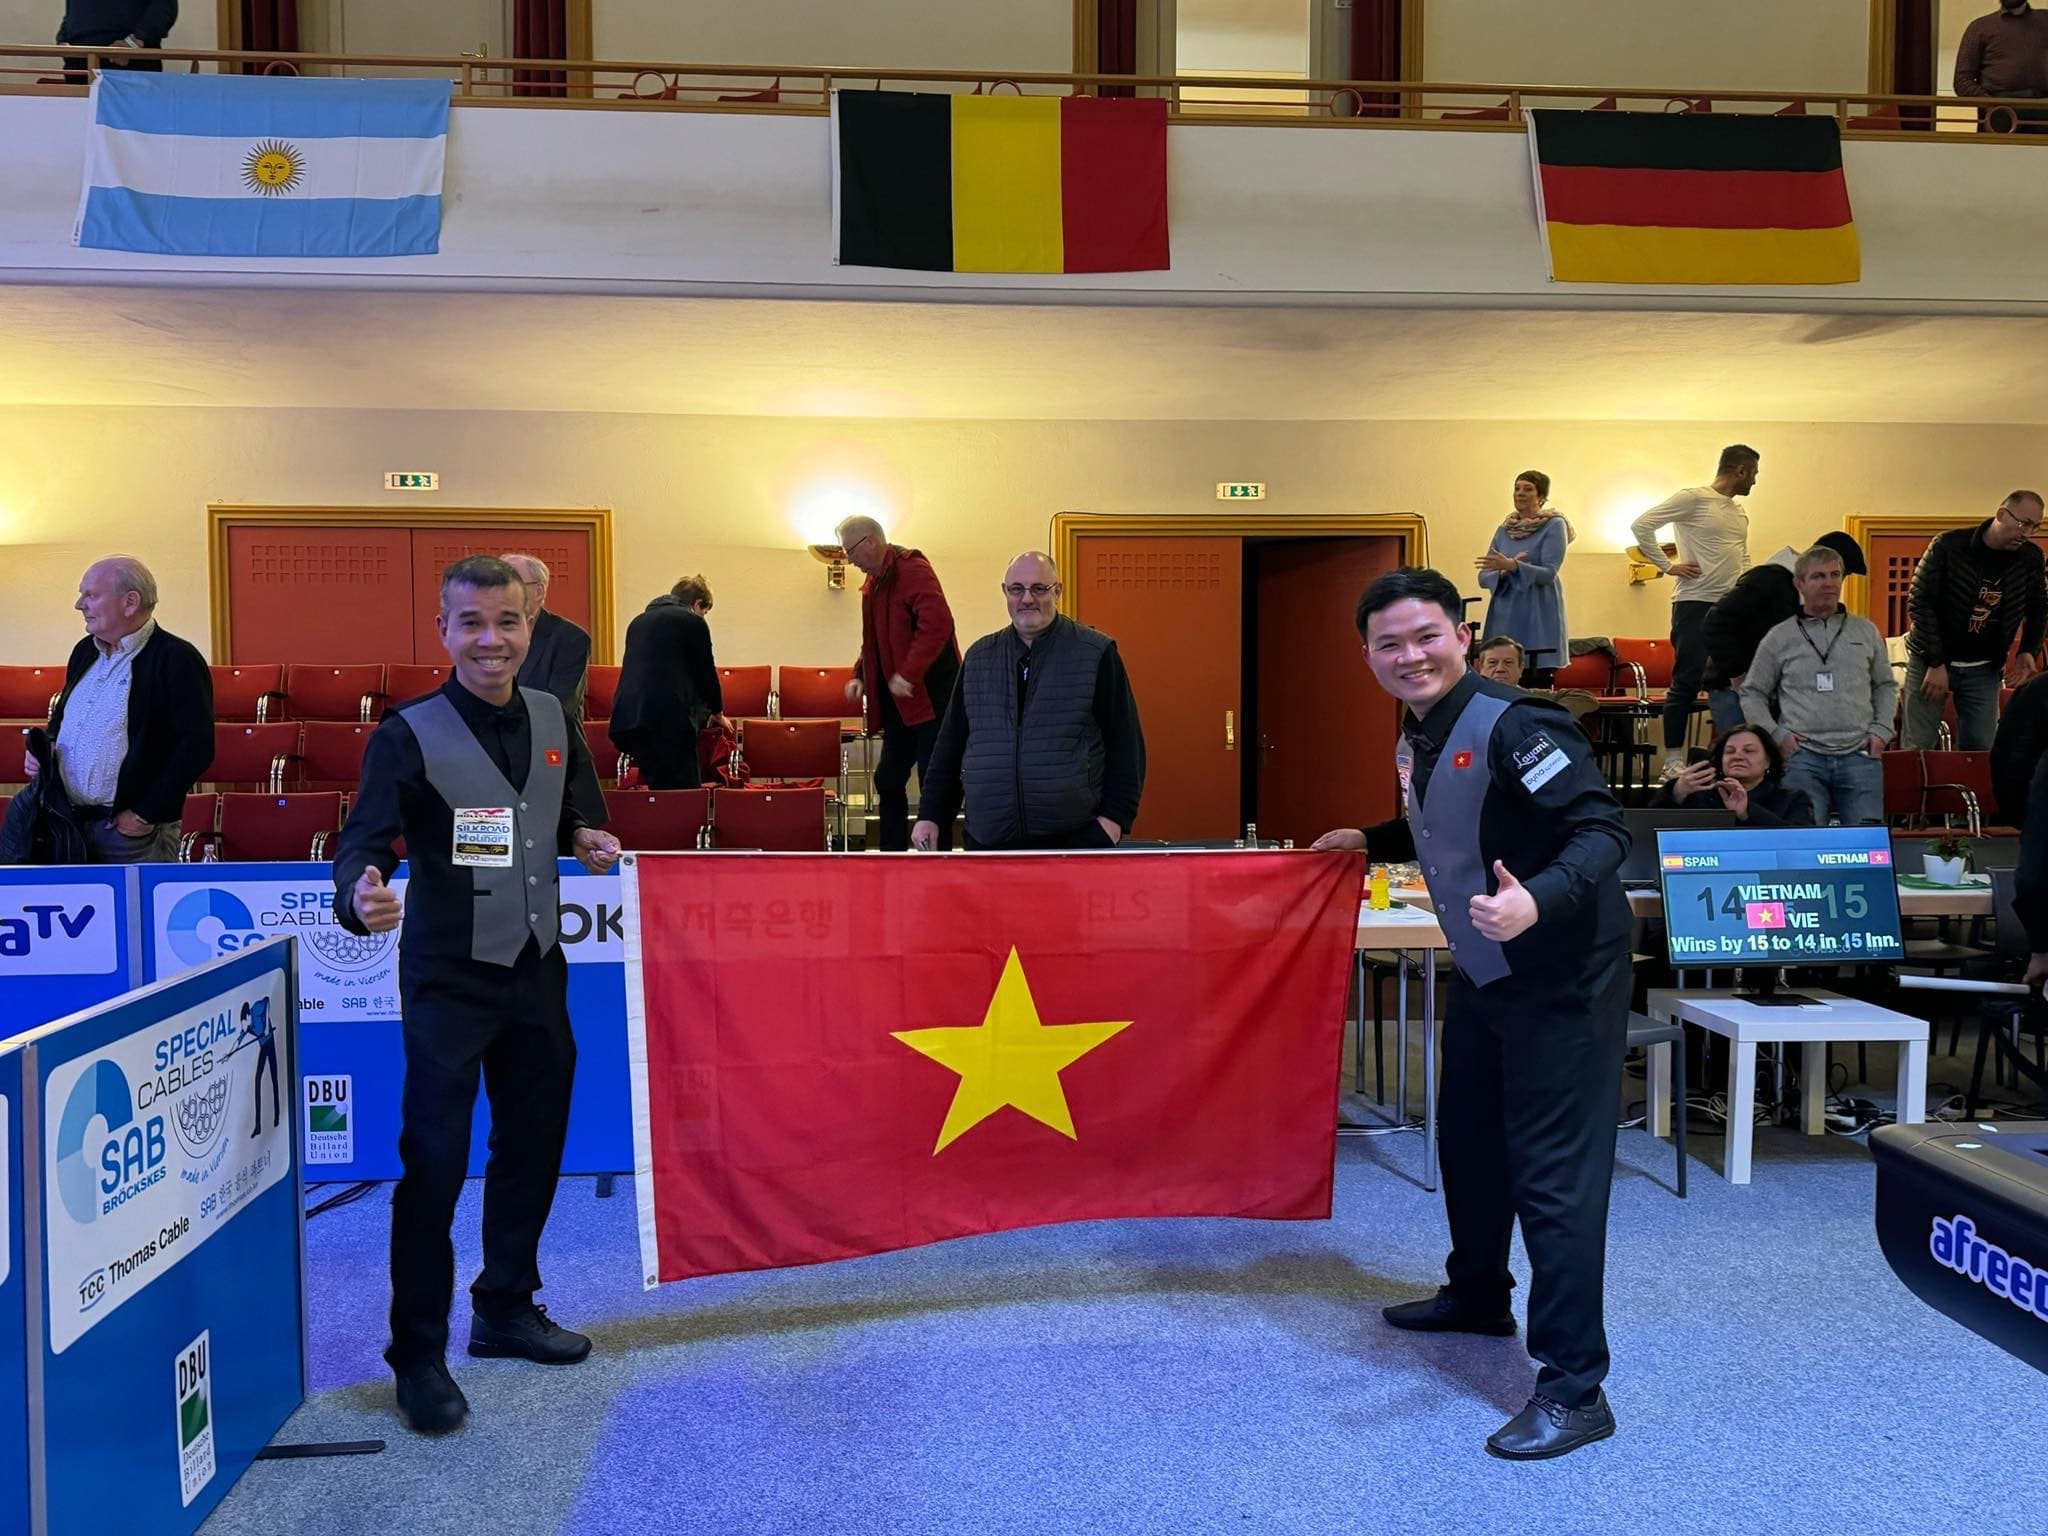 Trần Quyết Chiến - Bao Phương Vinh vô địch Giải billiards carom 3 băng đồng đội thế giới- Ảnh 3.